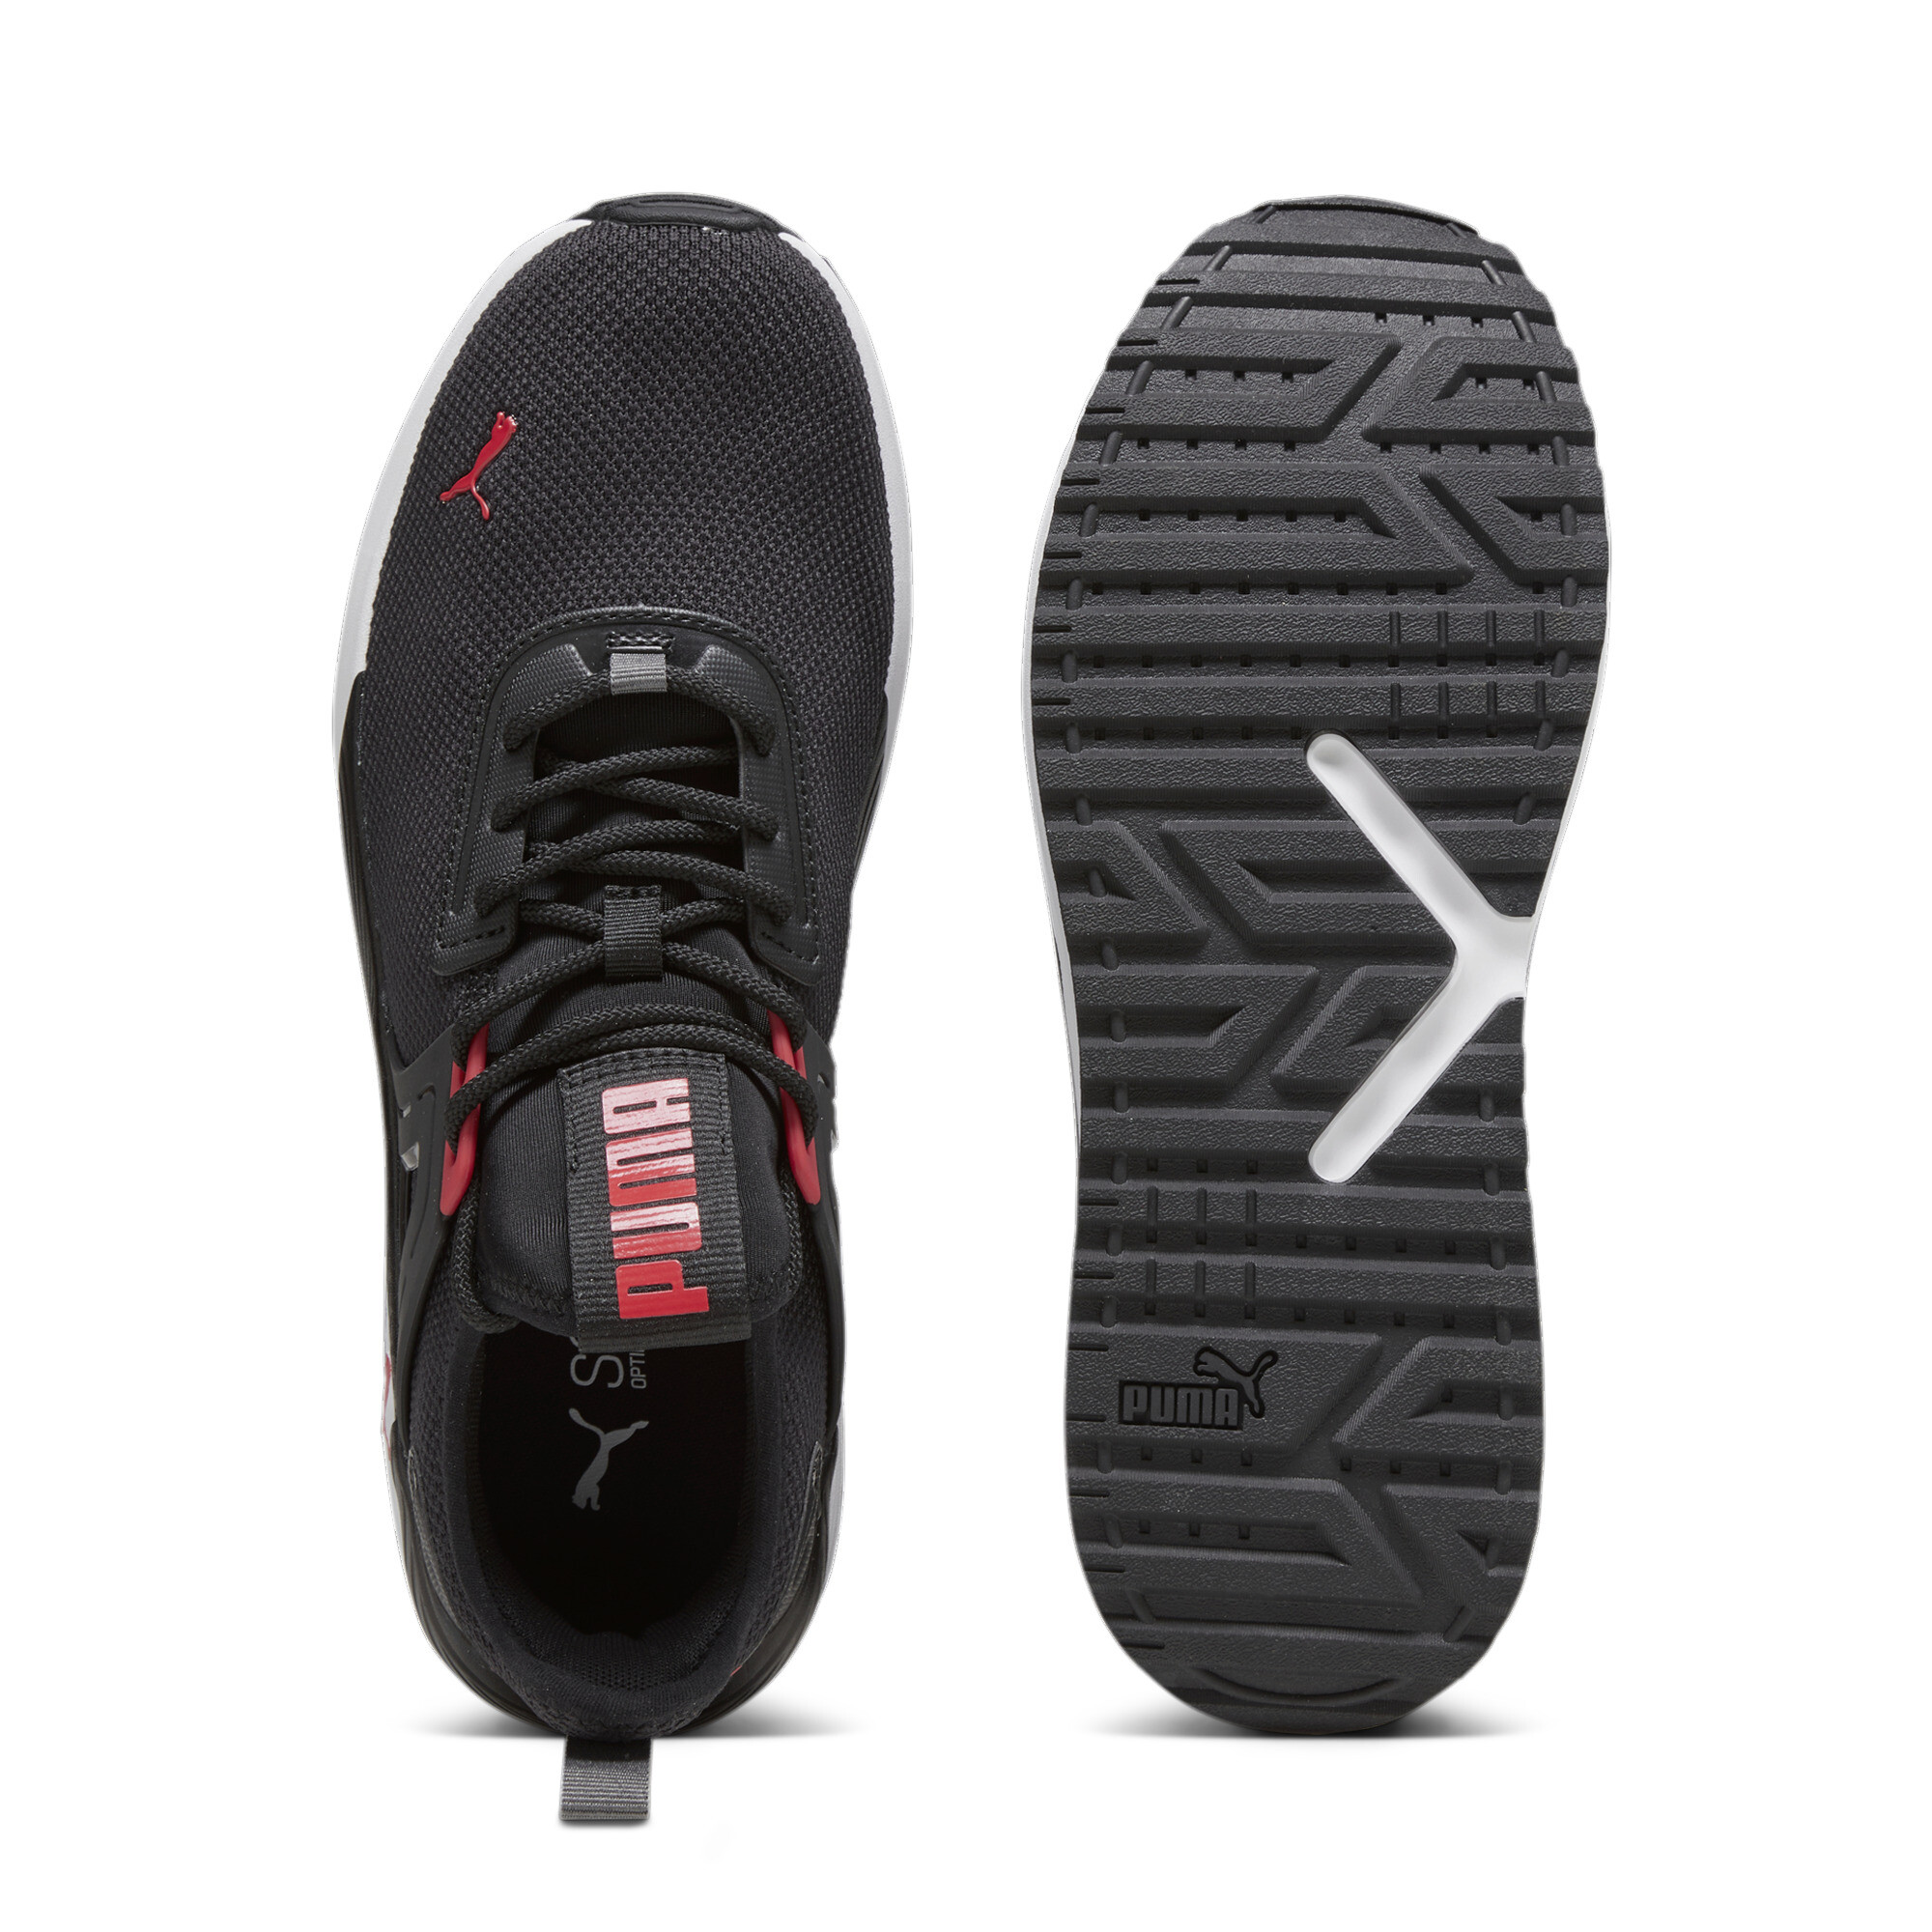 Men's PUMA Pacer 23 Sneakers In Black, Size EU 43